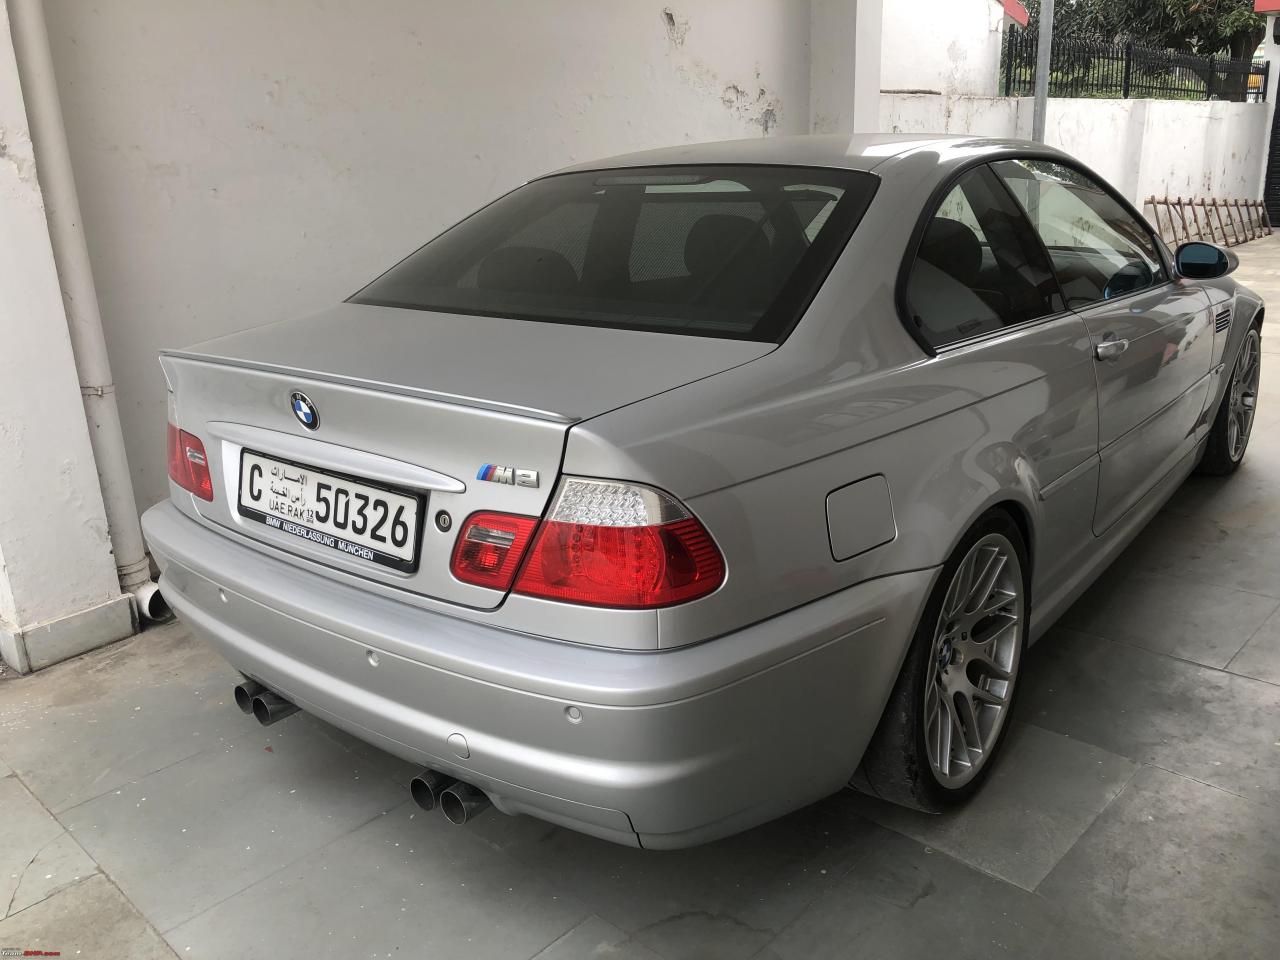 BMW E46 M3 for sale at ERclassics, e46 